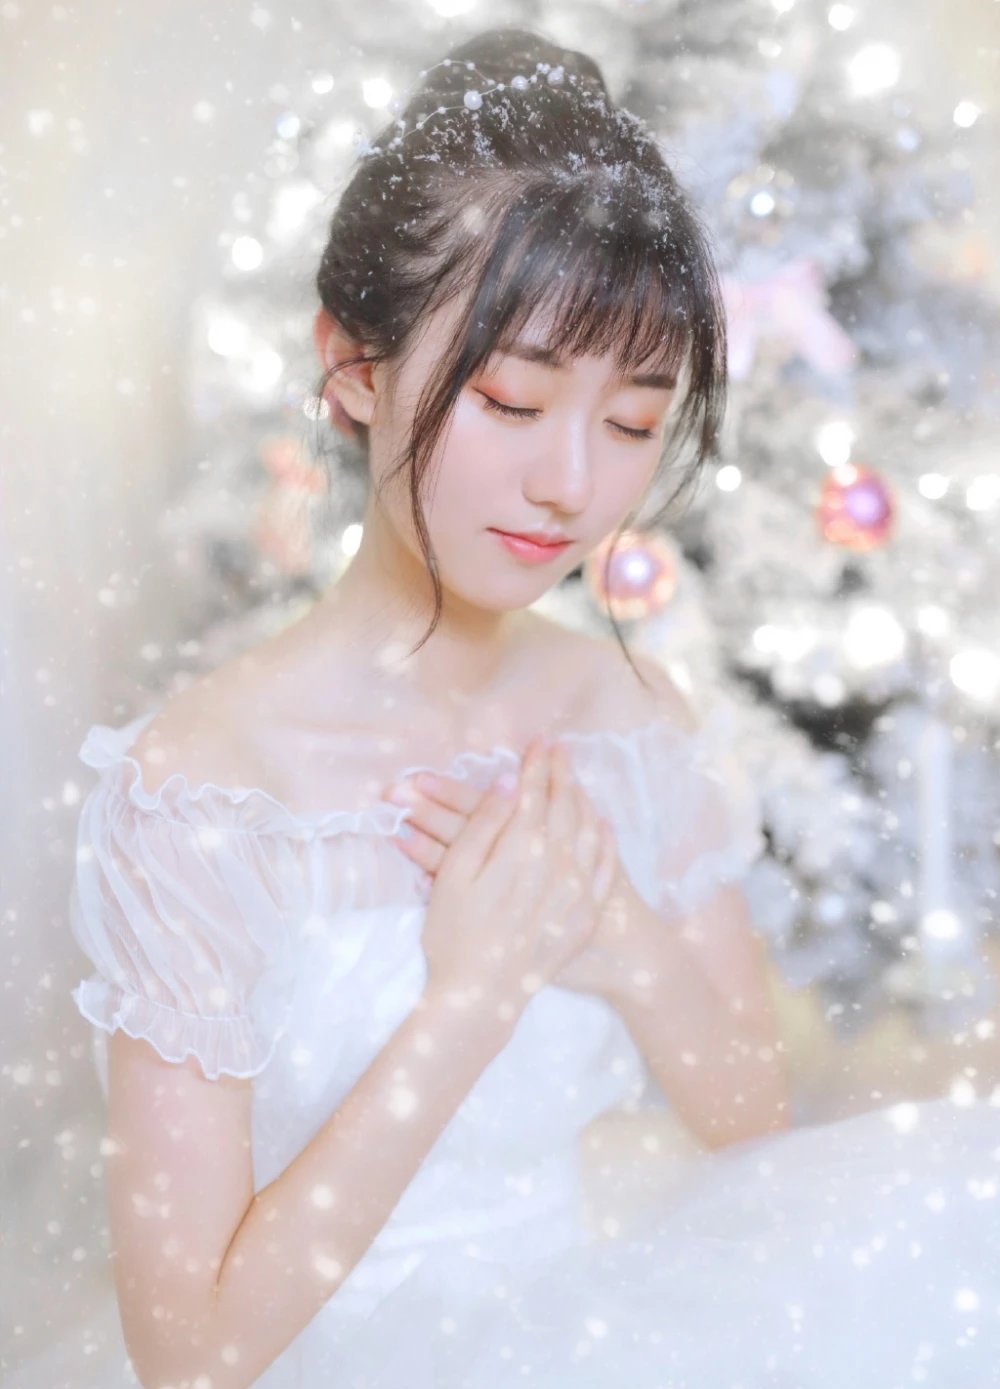 清纯梦幻小仙女透视白纱浪漫圣诞写真